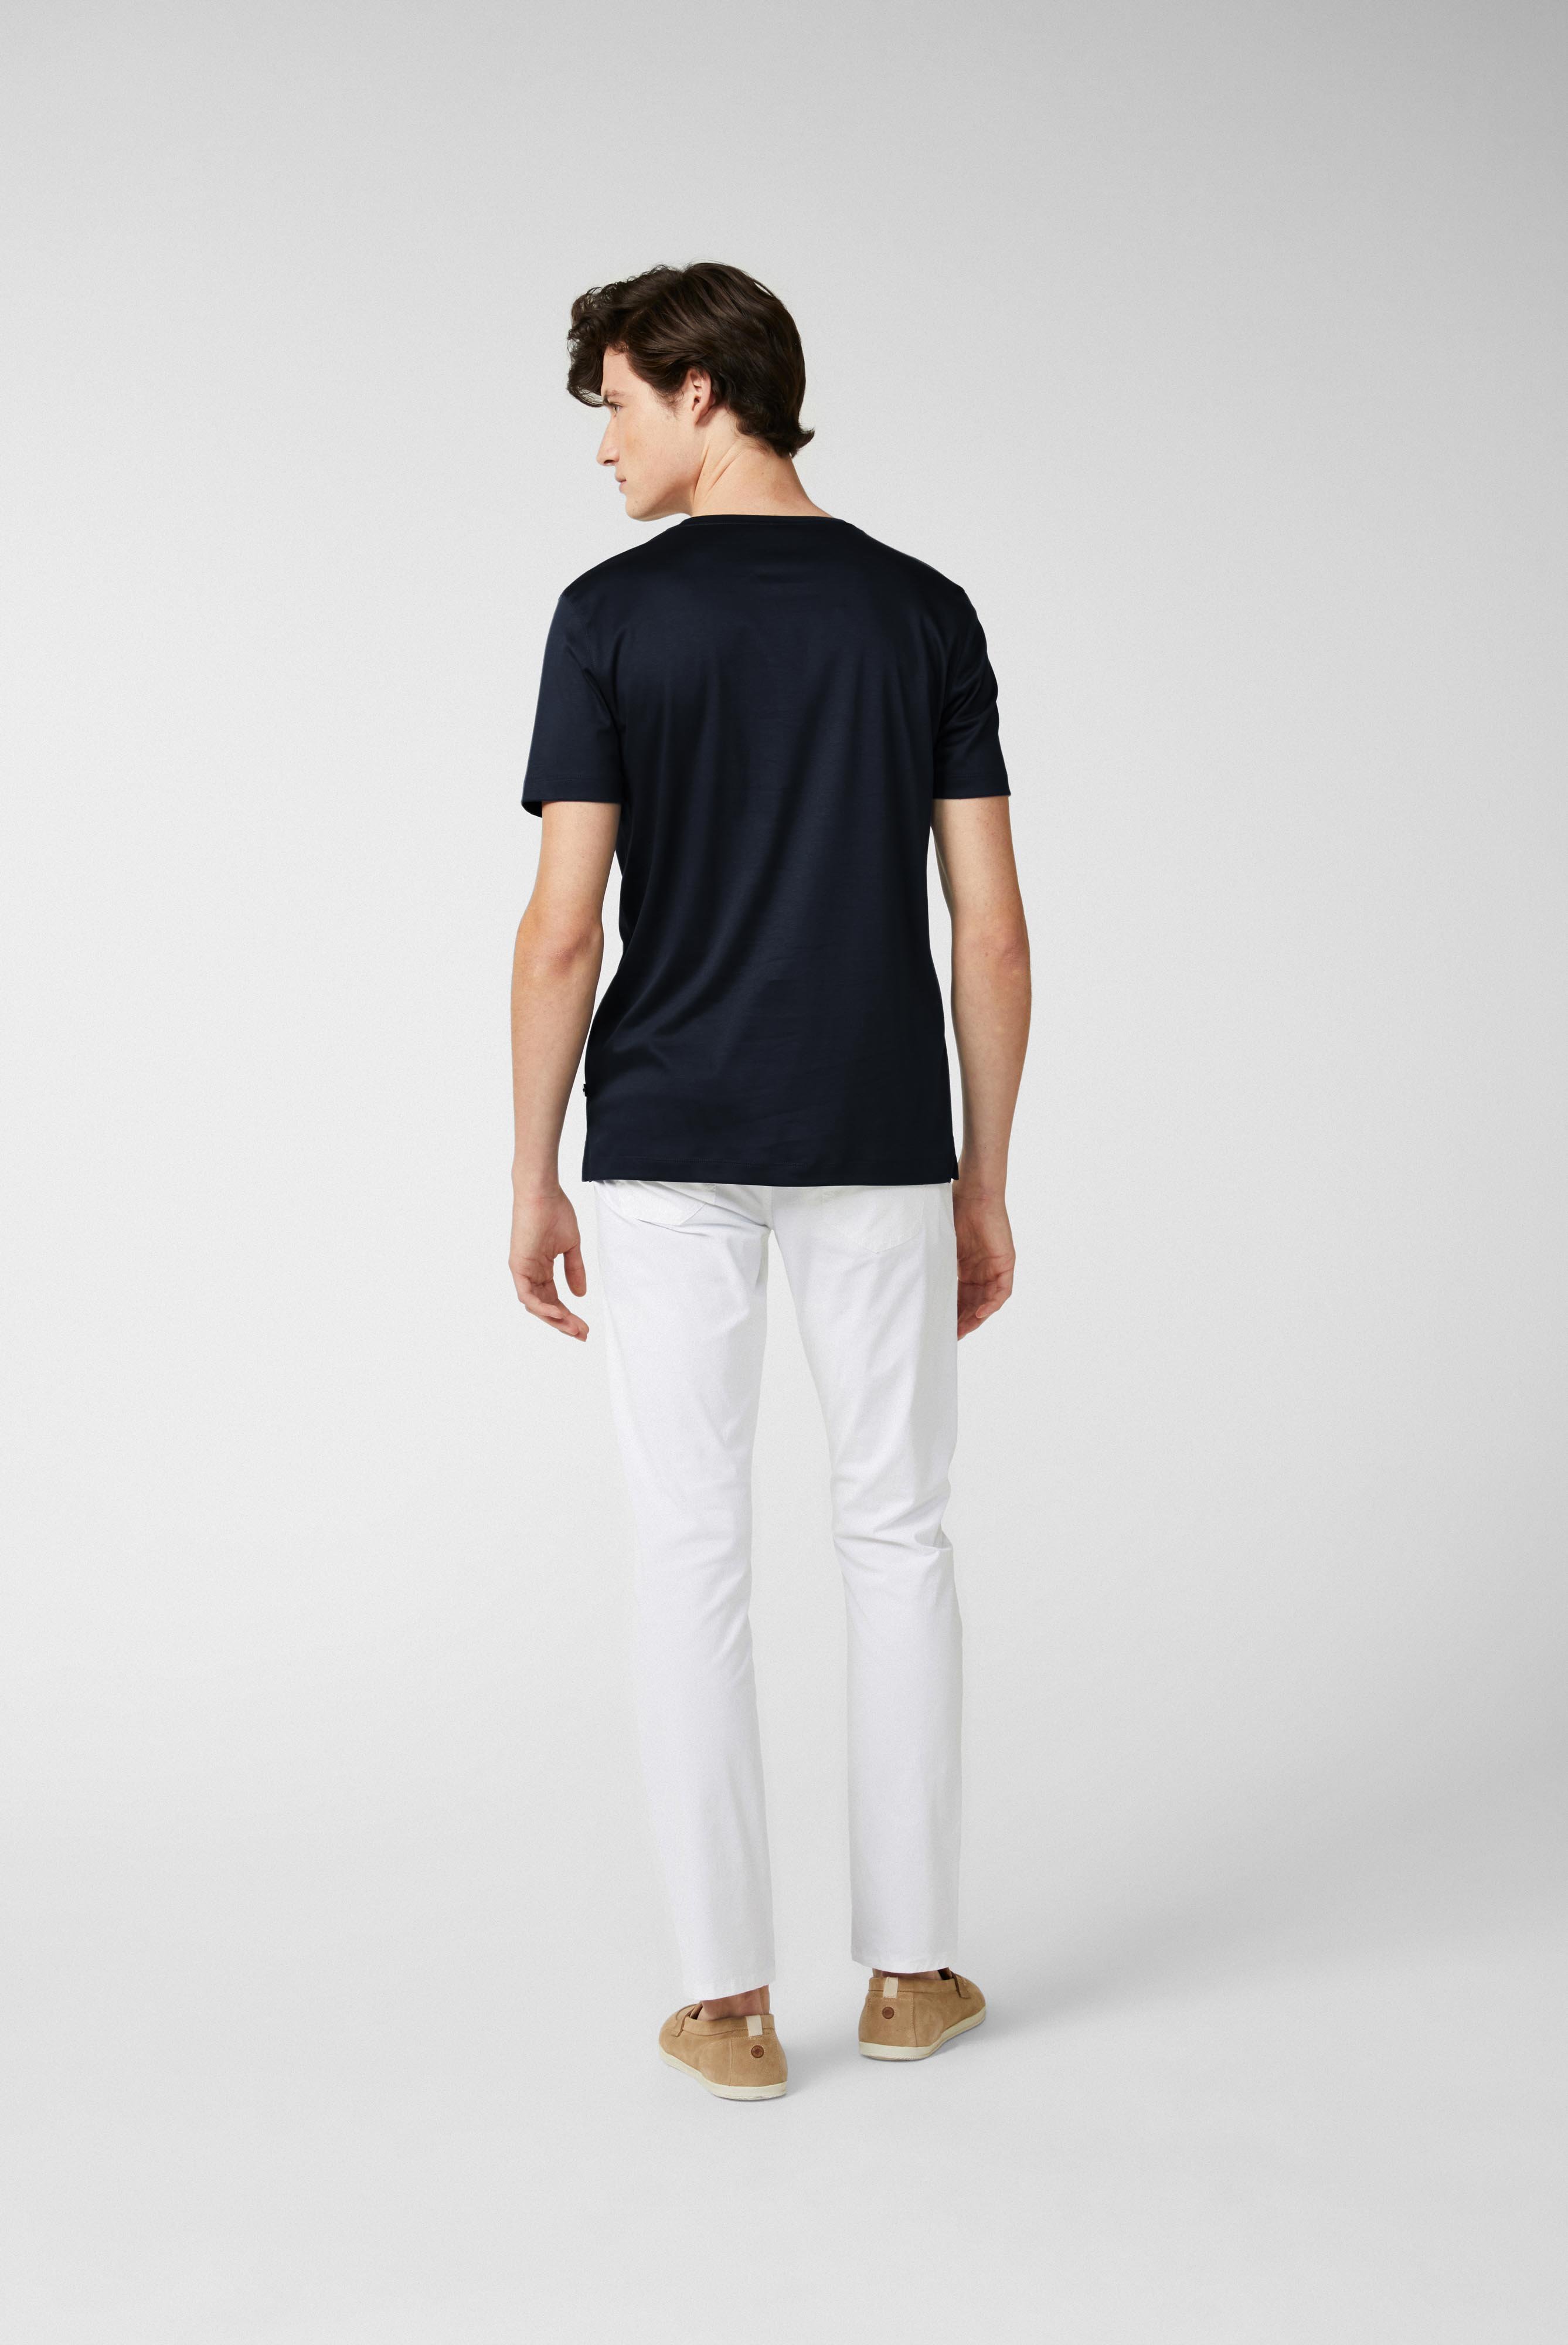 T-Shirts+Rundhals Jersey T-Shirt Slim Fit+20.1717.UX.180031.790.X3L